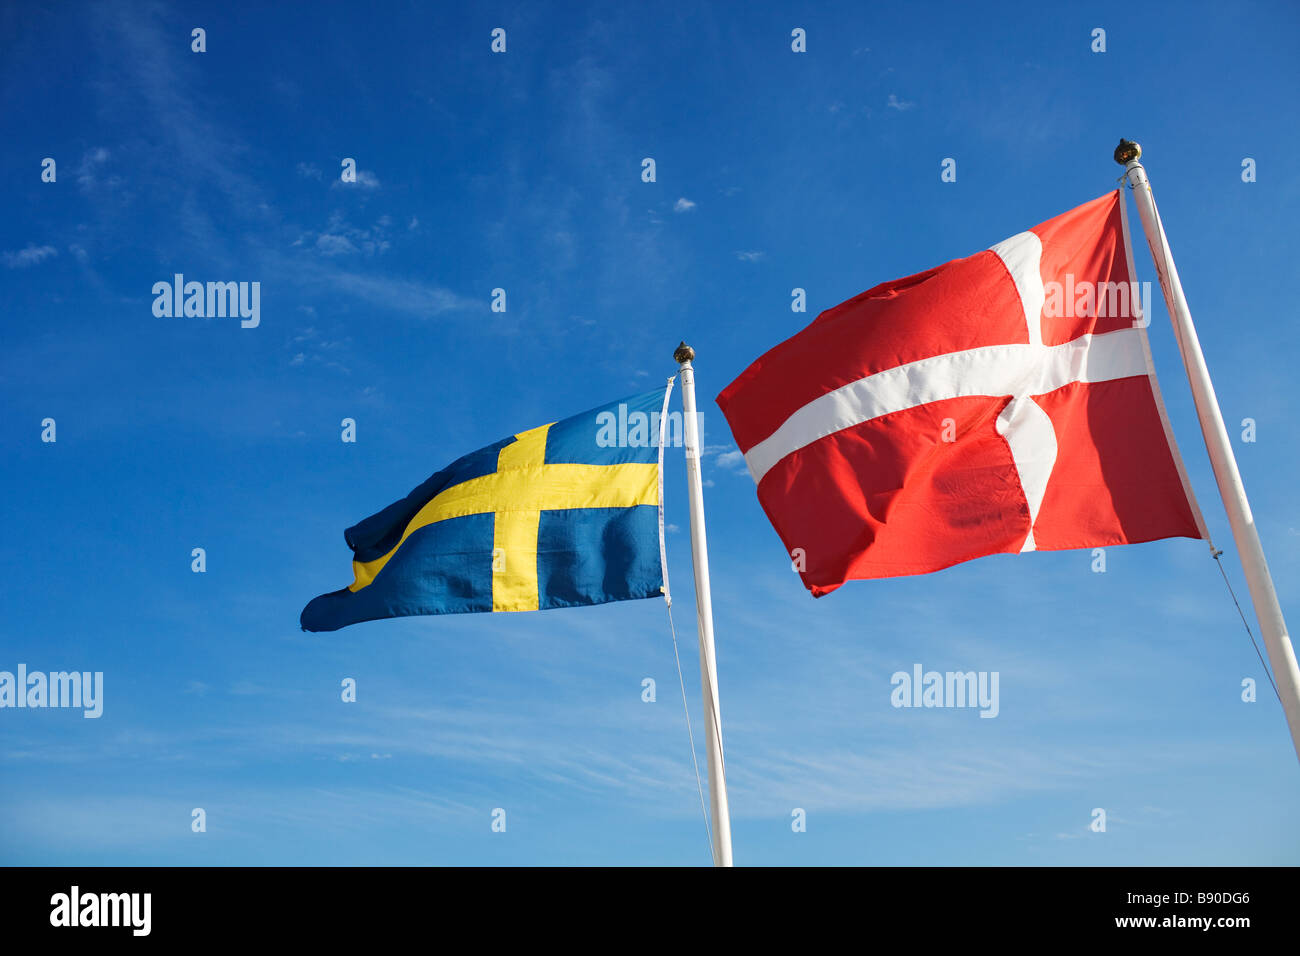 Banderas suecas y danesas en Suecia. Foto de stock